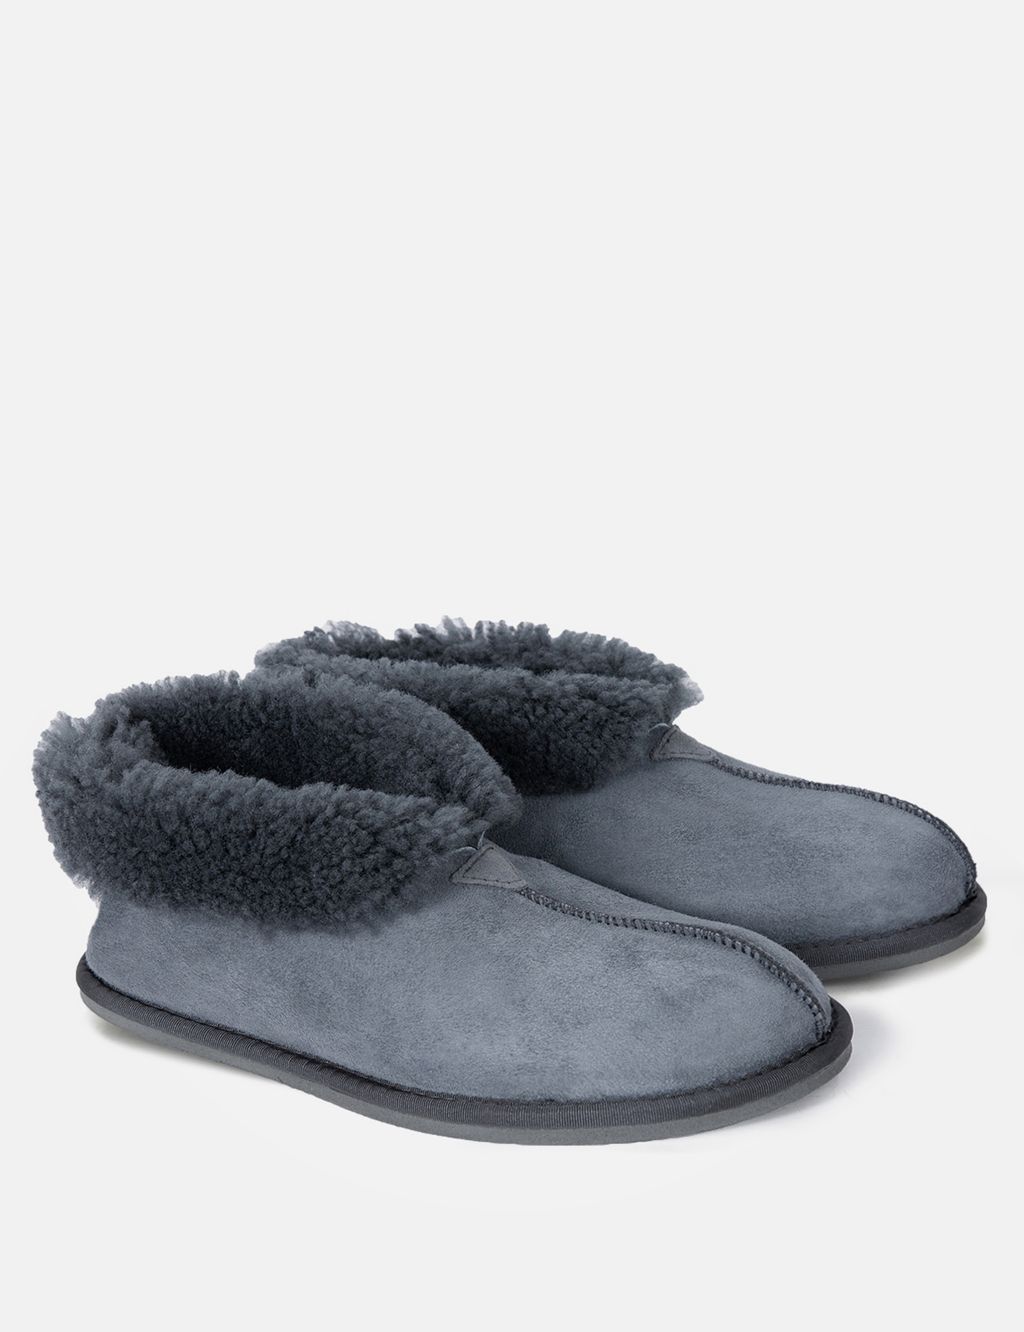 Buy Sheepskin Slipper Boots | Celtic & Co. | M&S